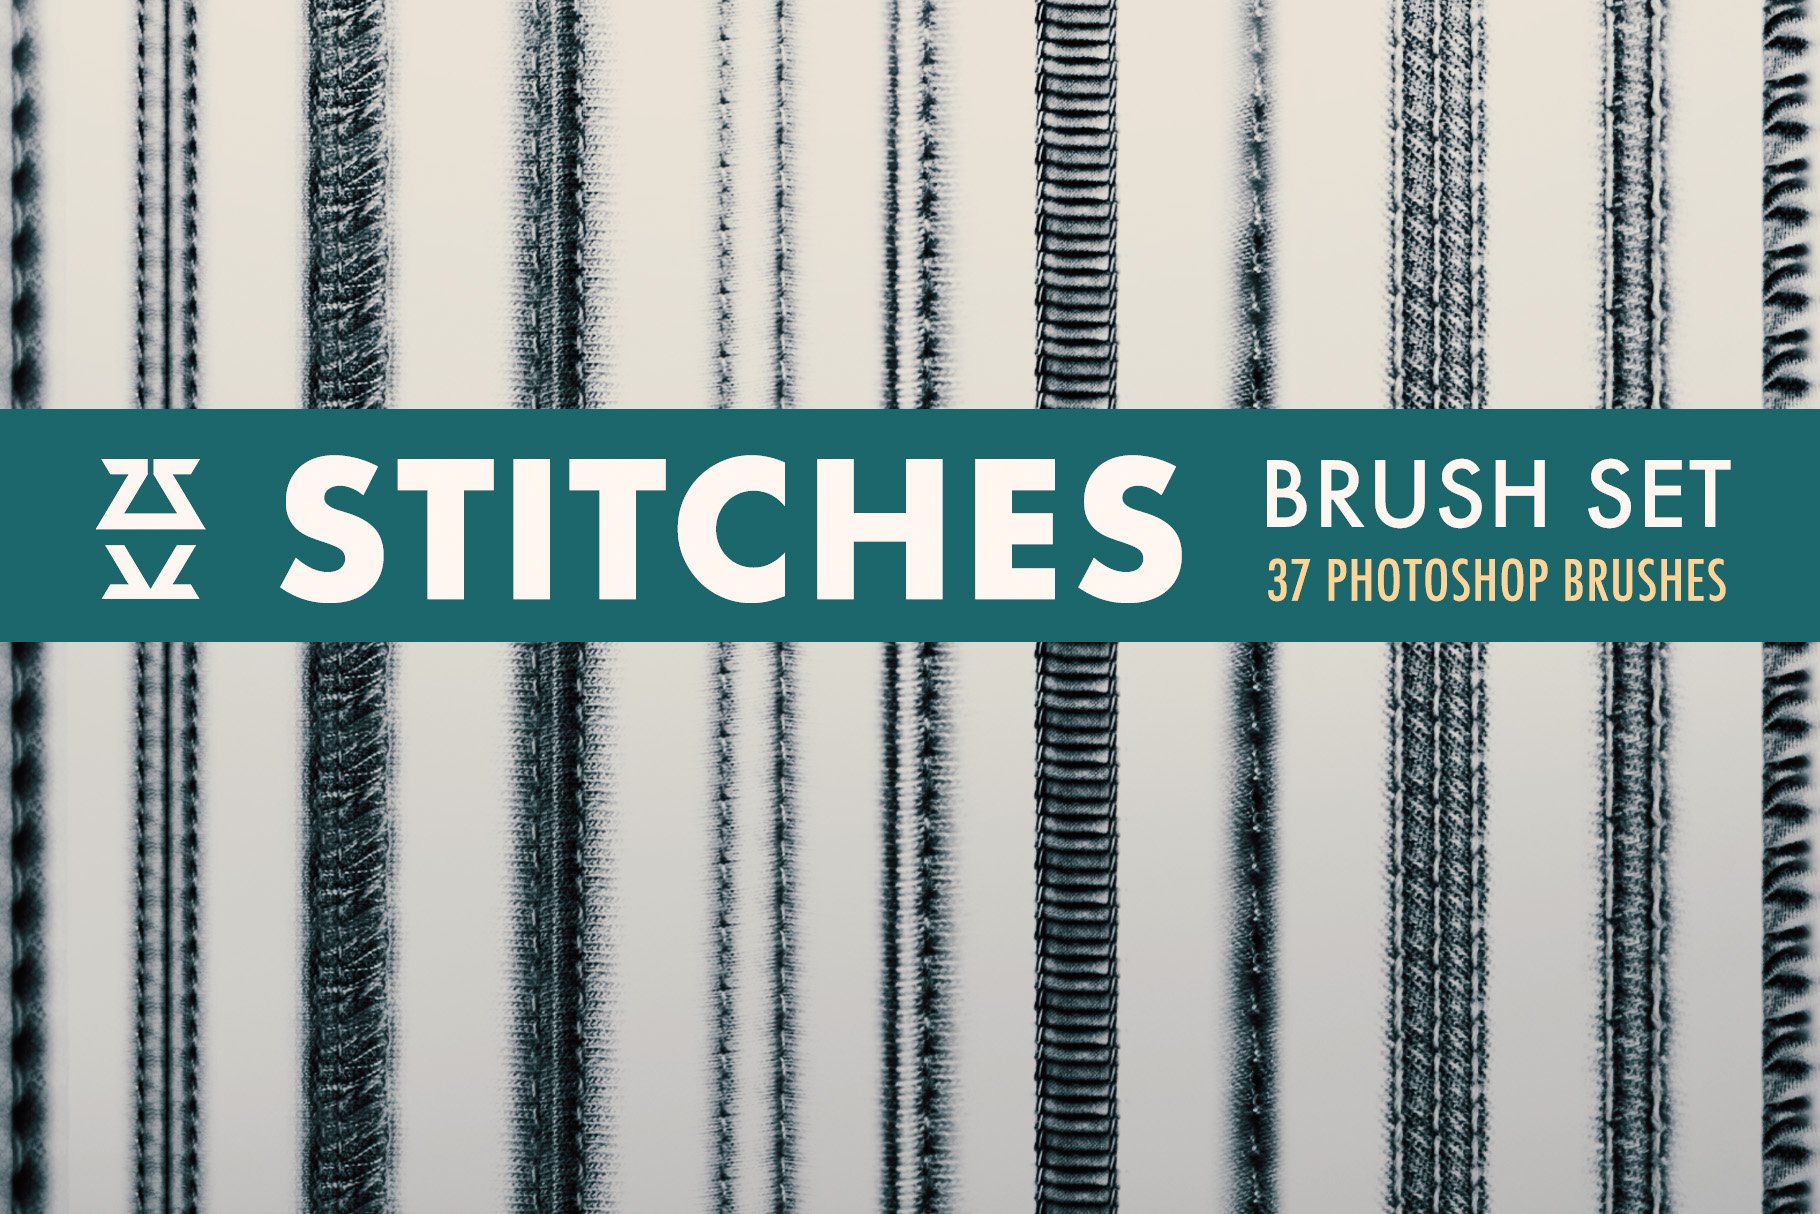 Stitches Brush Setcover image.